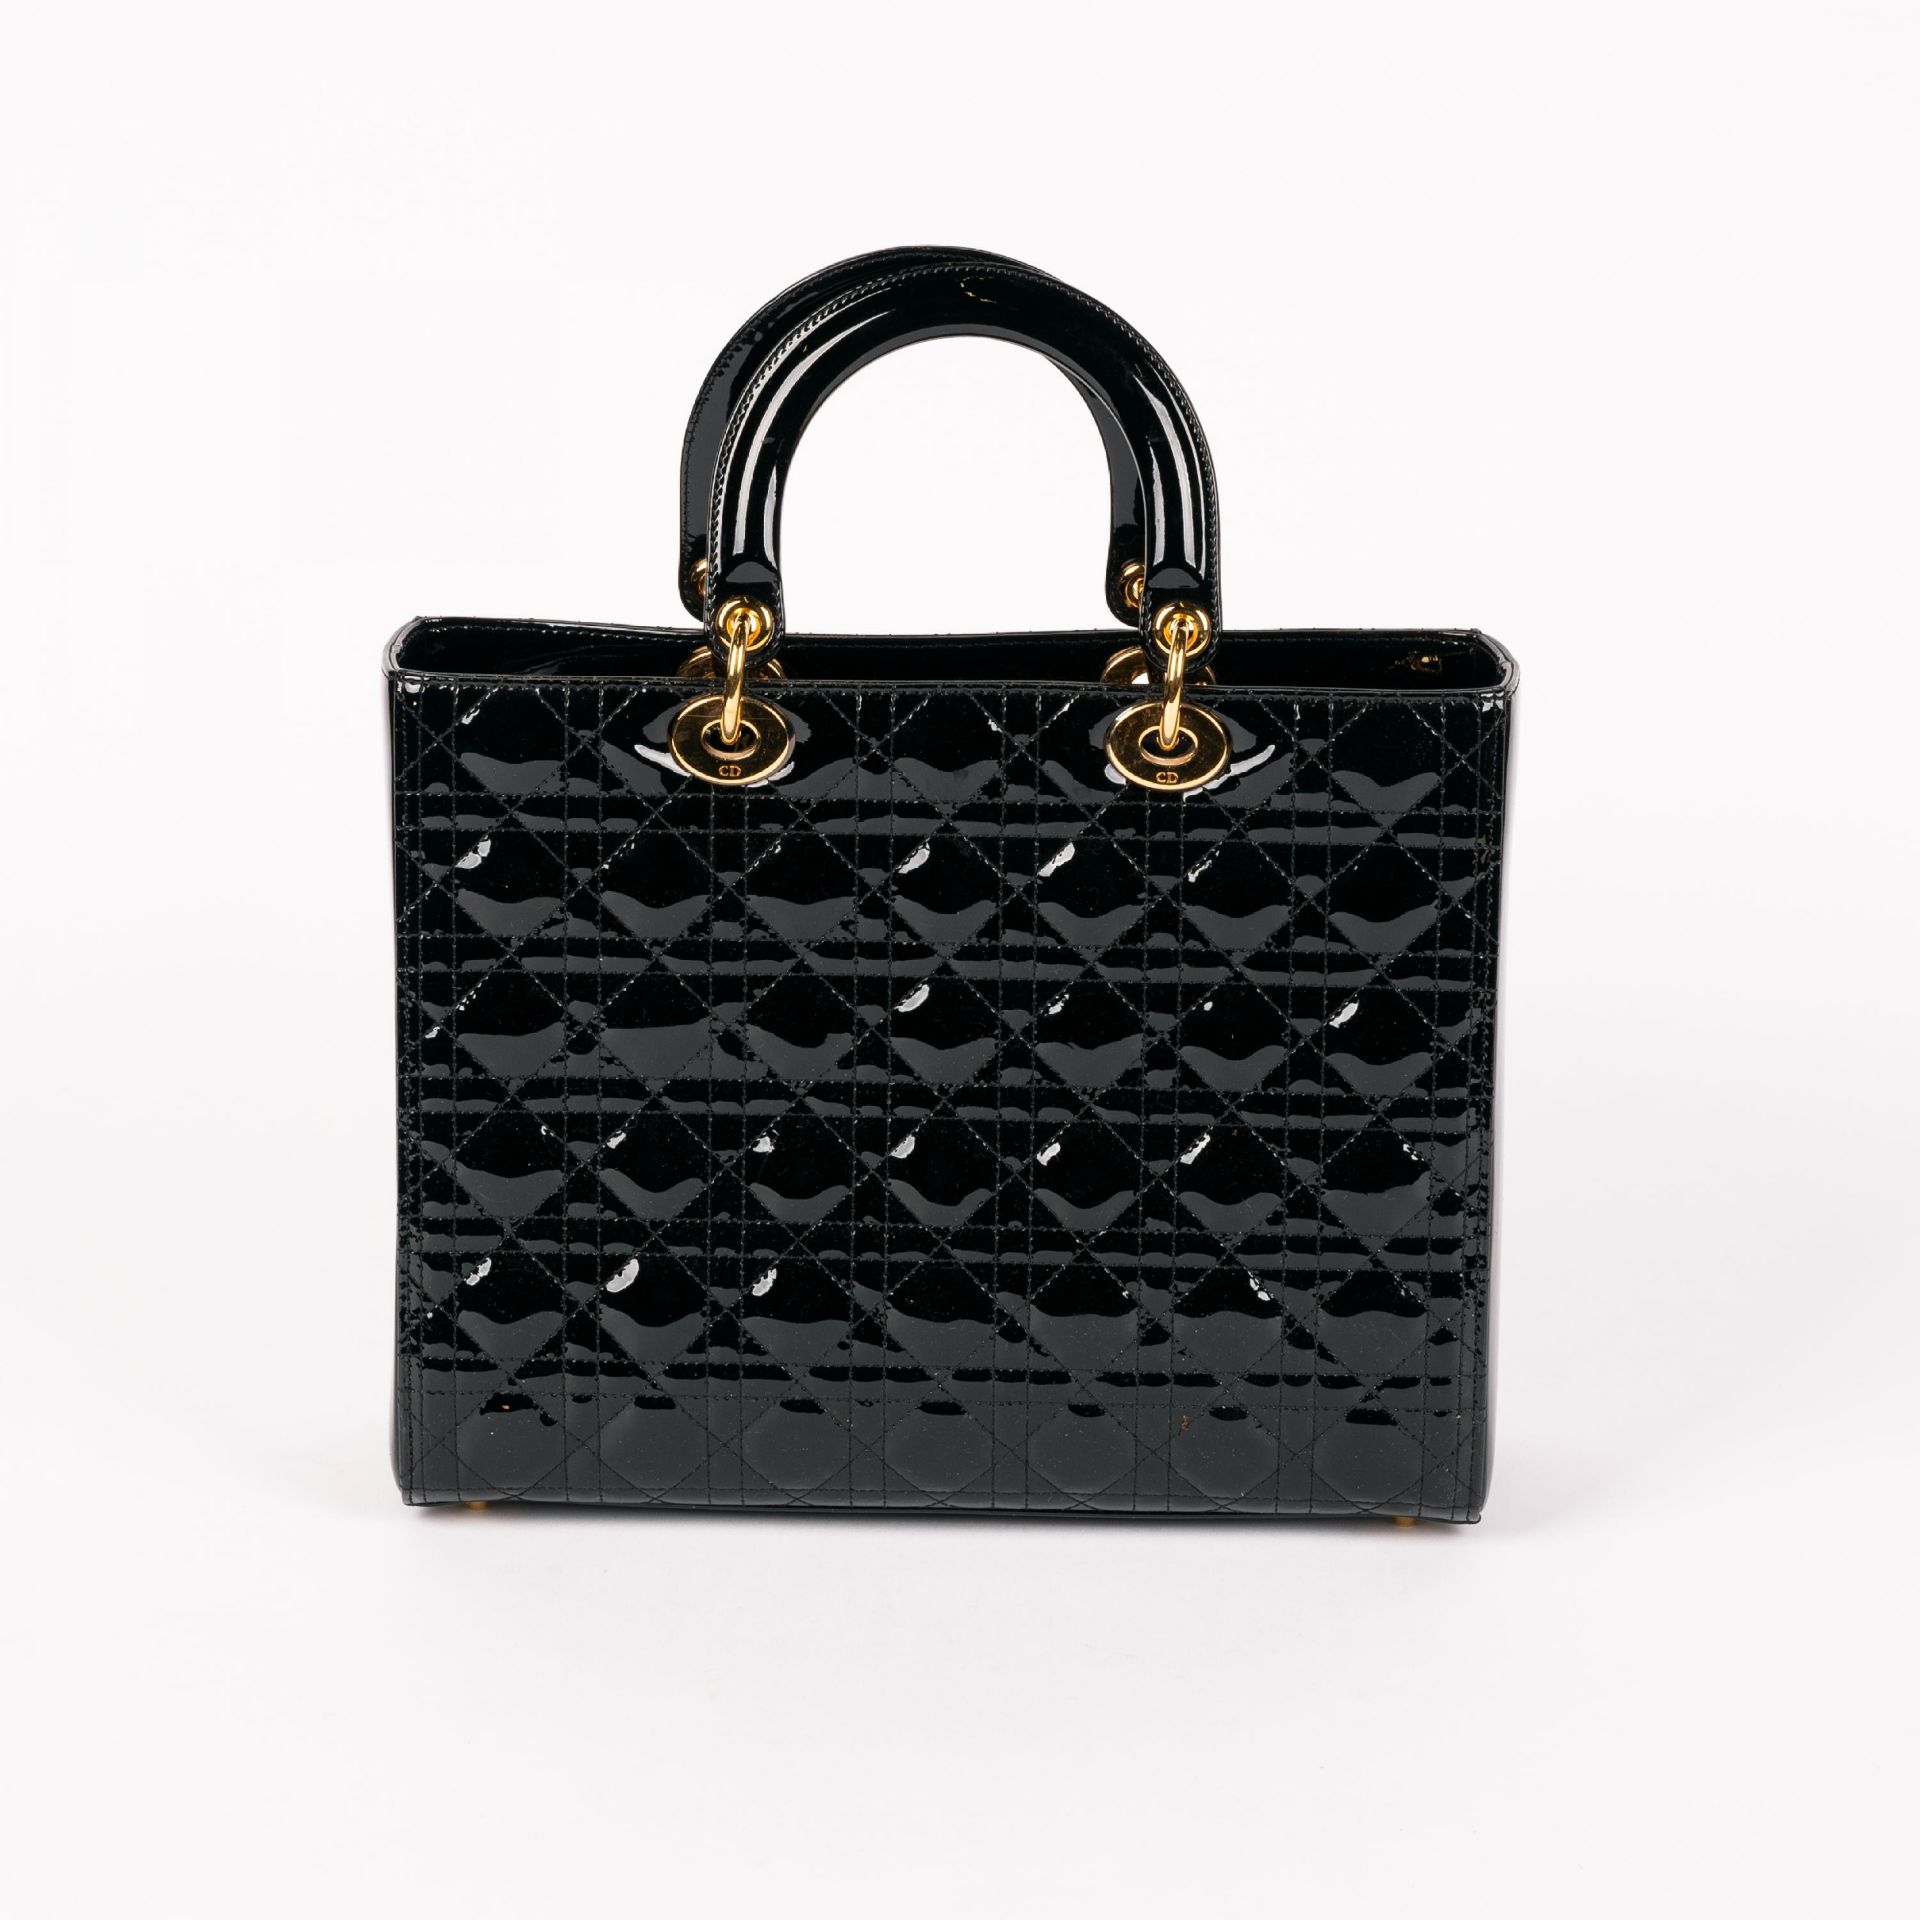 Christian Dior: Handtasche 'Lady Dior' - Bild 3 aus 6